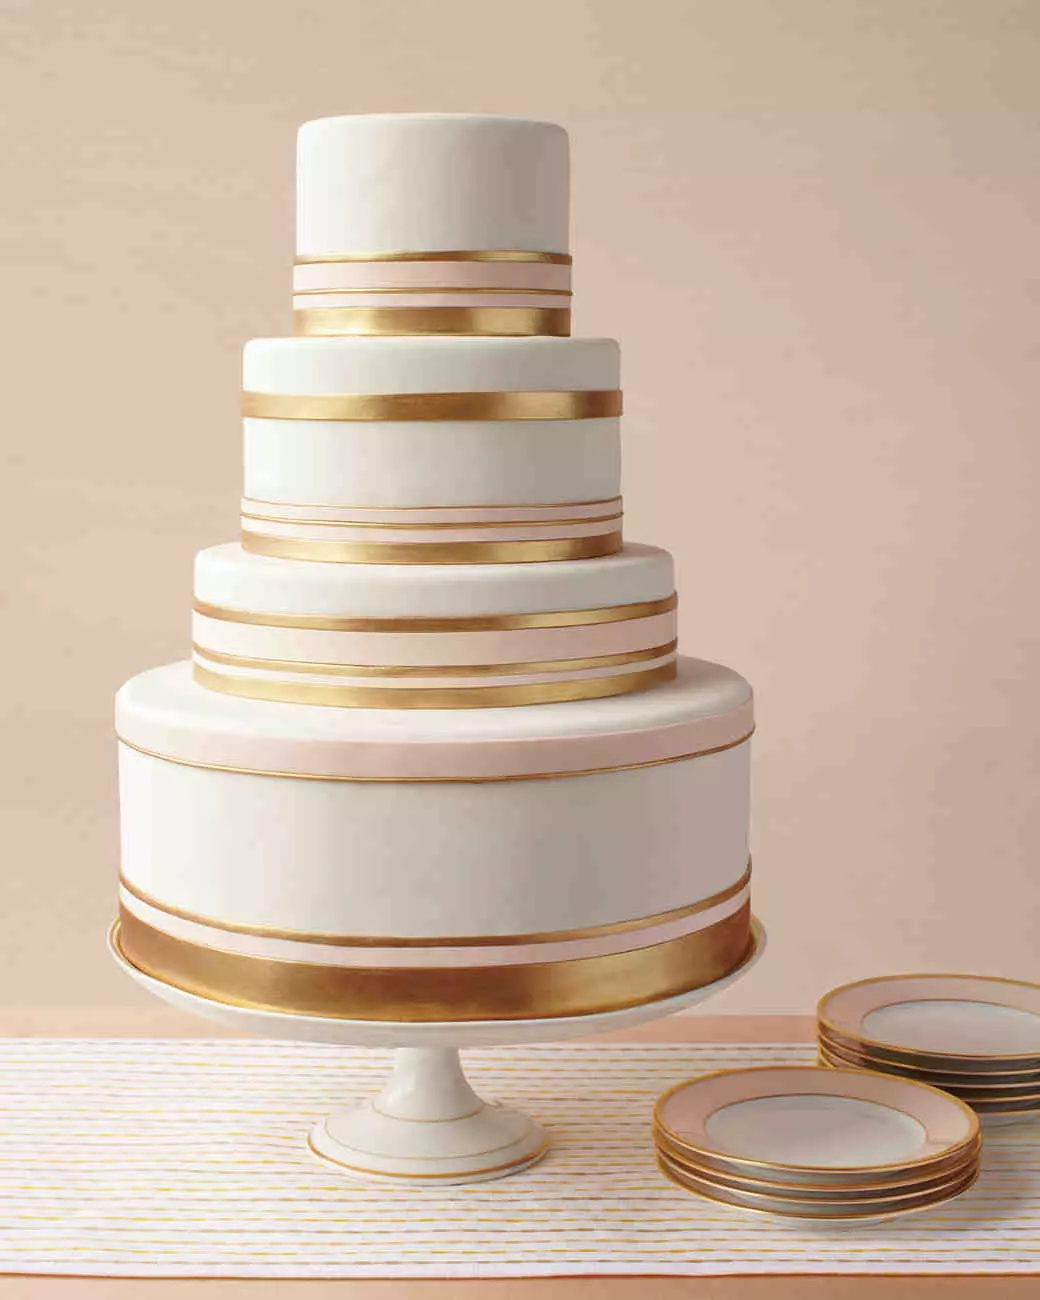 Casamento de ouro (16 fotos): 50 anos de vida juntos, escolha a decoração do bolo no aniversário do casamento 19007_16